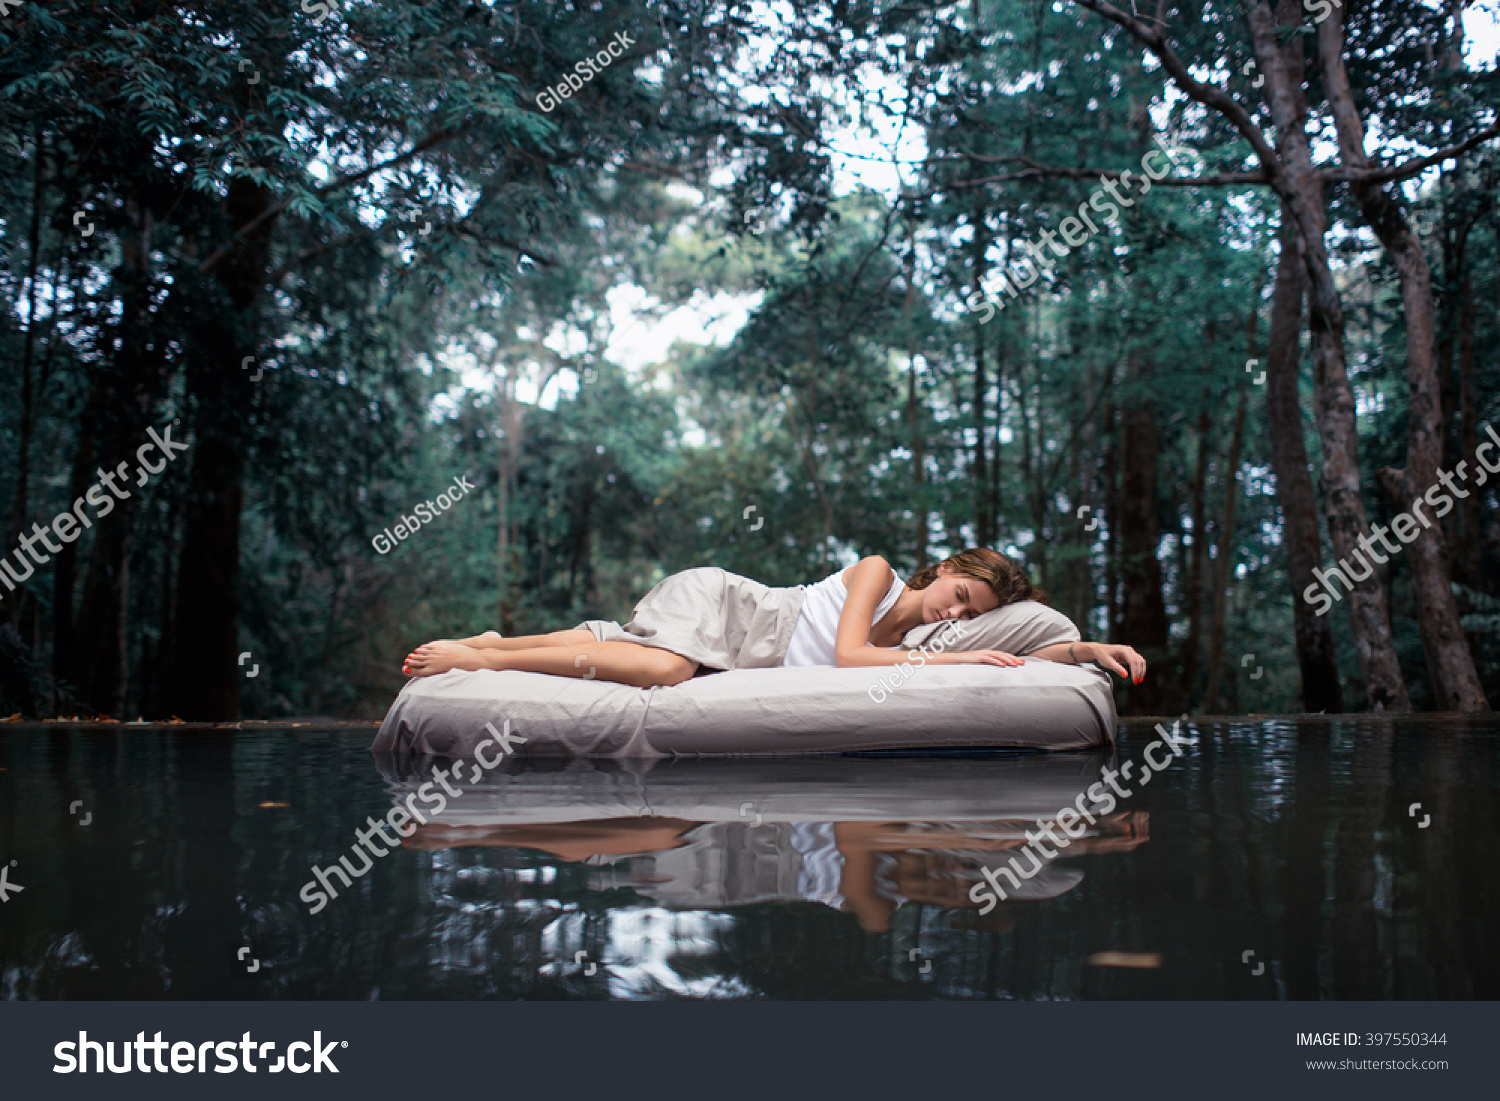 隠れた場所 深い森の中で眠っている女性は エアベッドの上に横たわる の写真素材 今すぐ編集